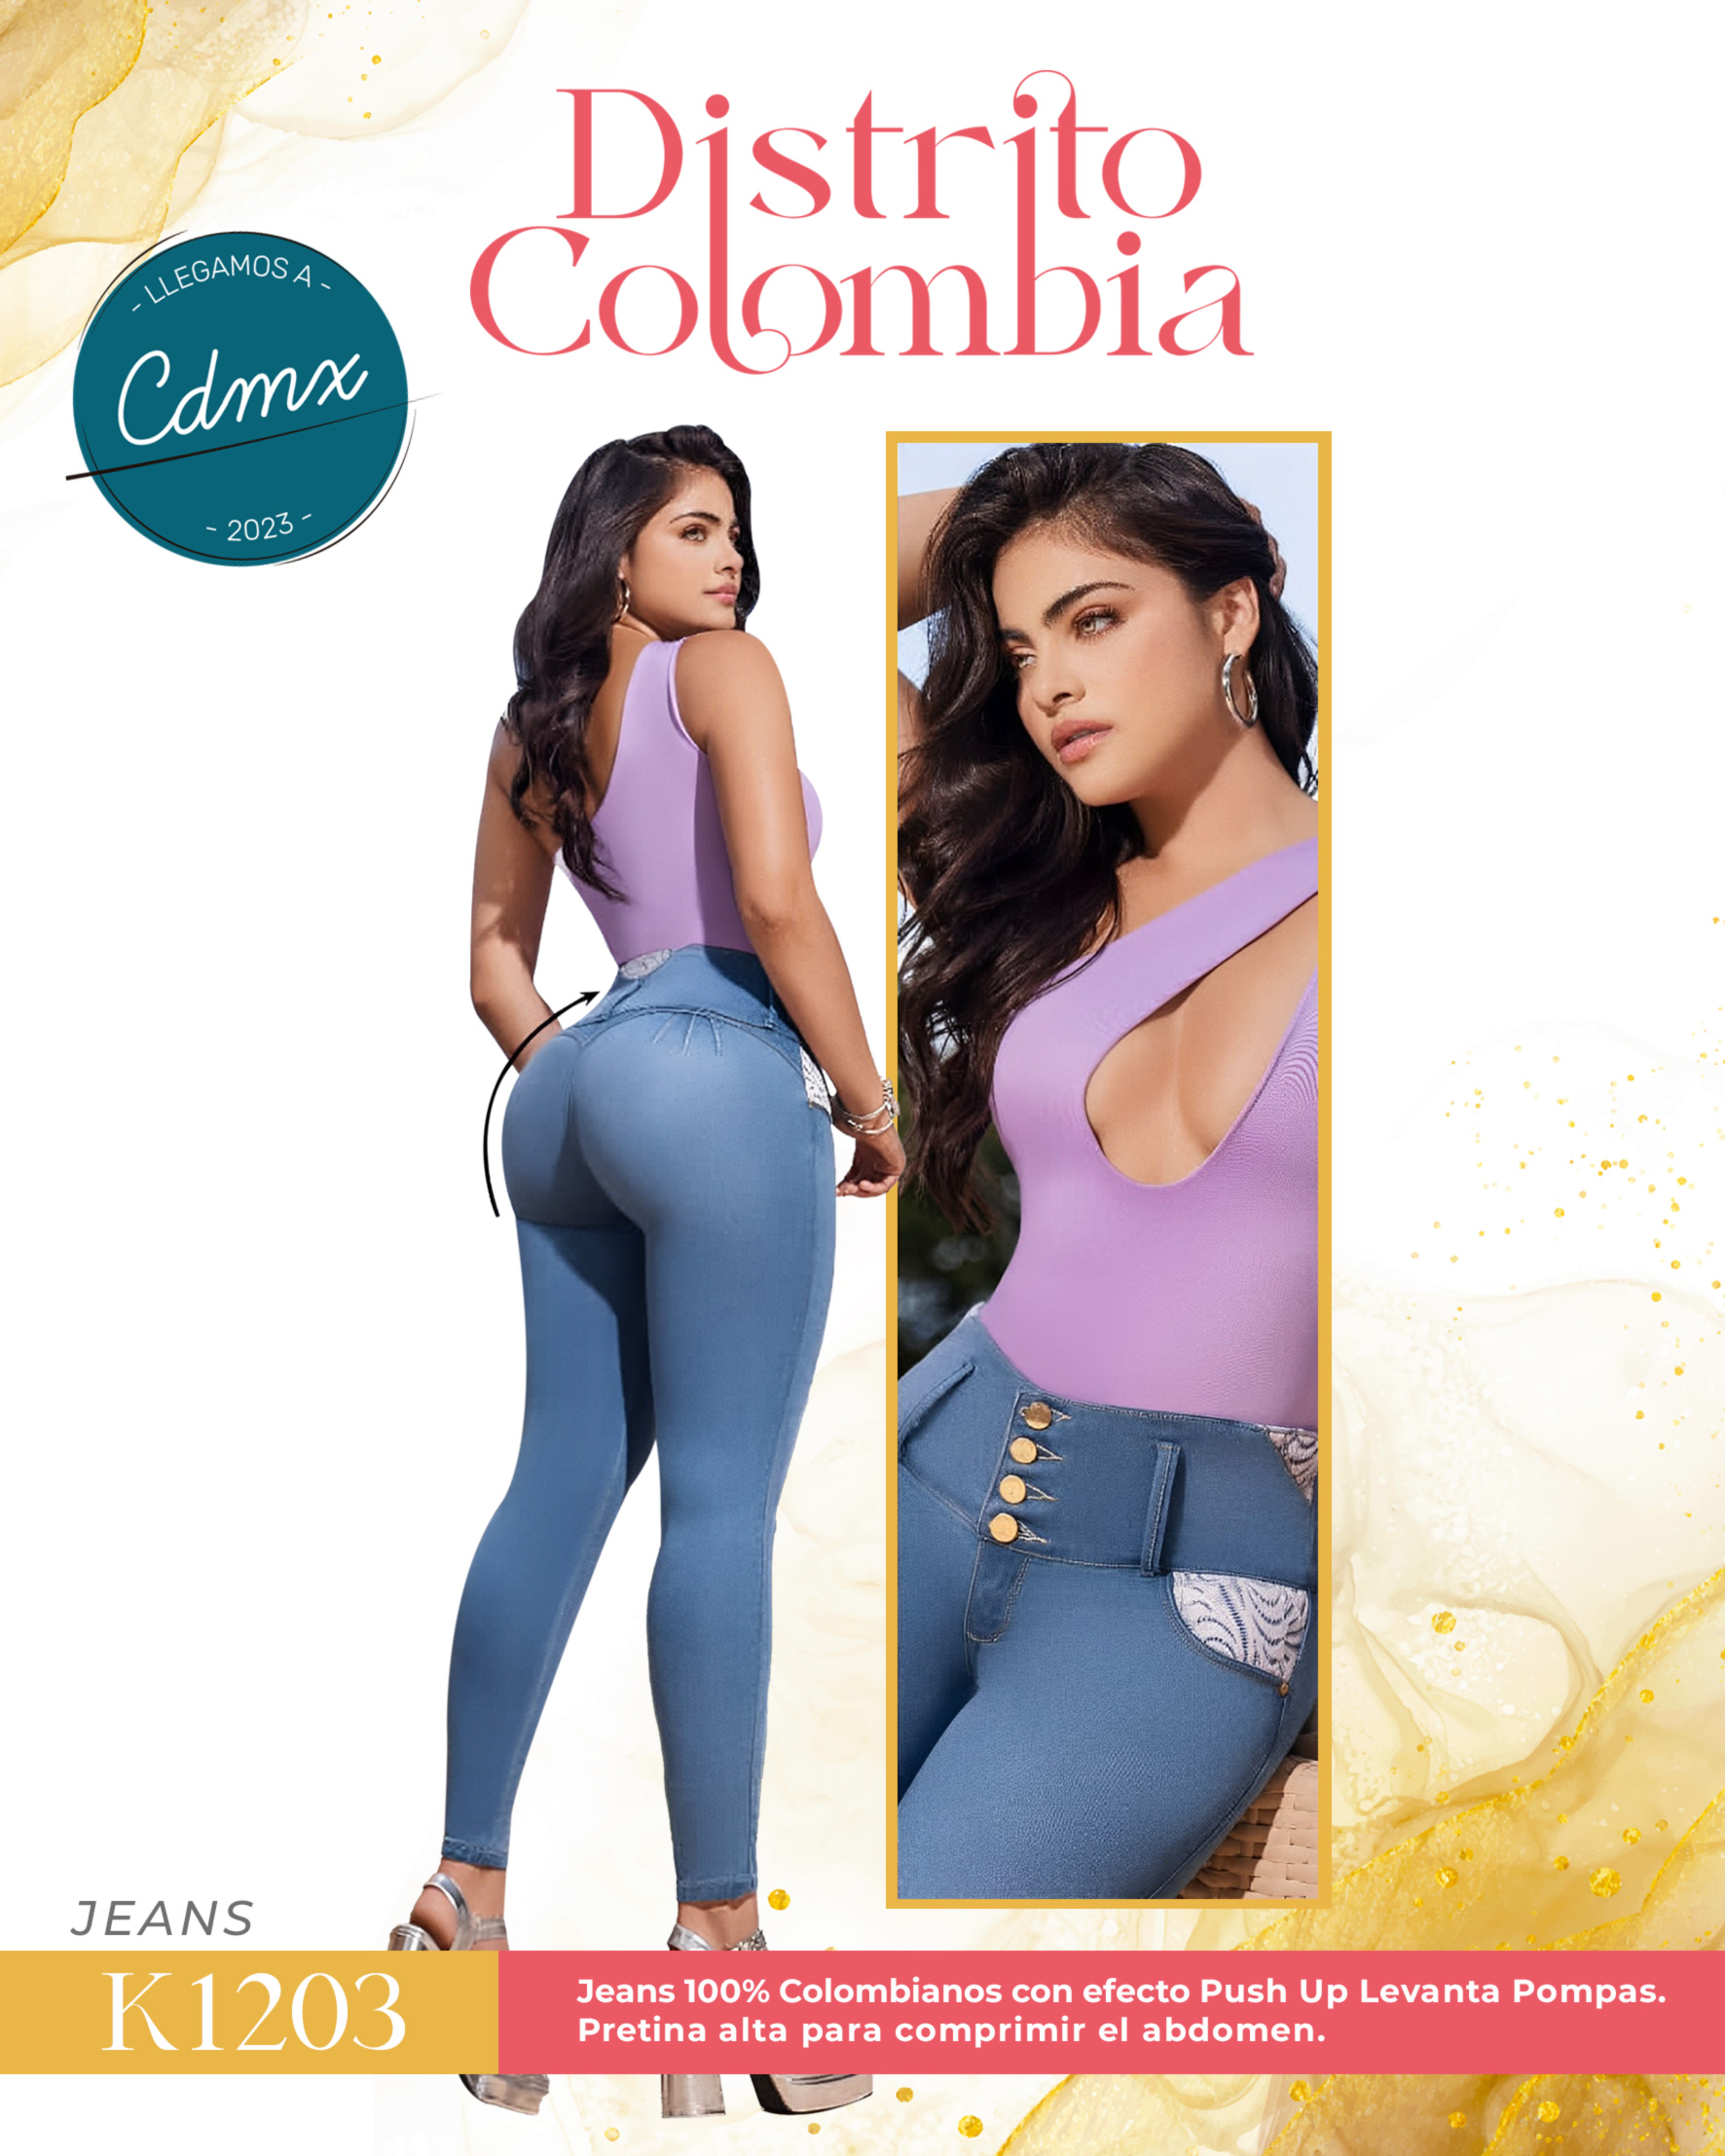 https://distrito-colombia.com/wp-content/uploads/2023/06/17-Jeans-Colombianos-Levanta-Pompas-Distrito-Colombia-CDMX-1203.jpg